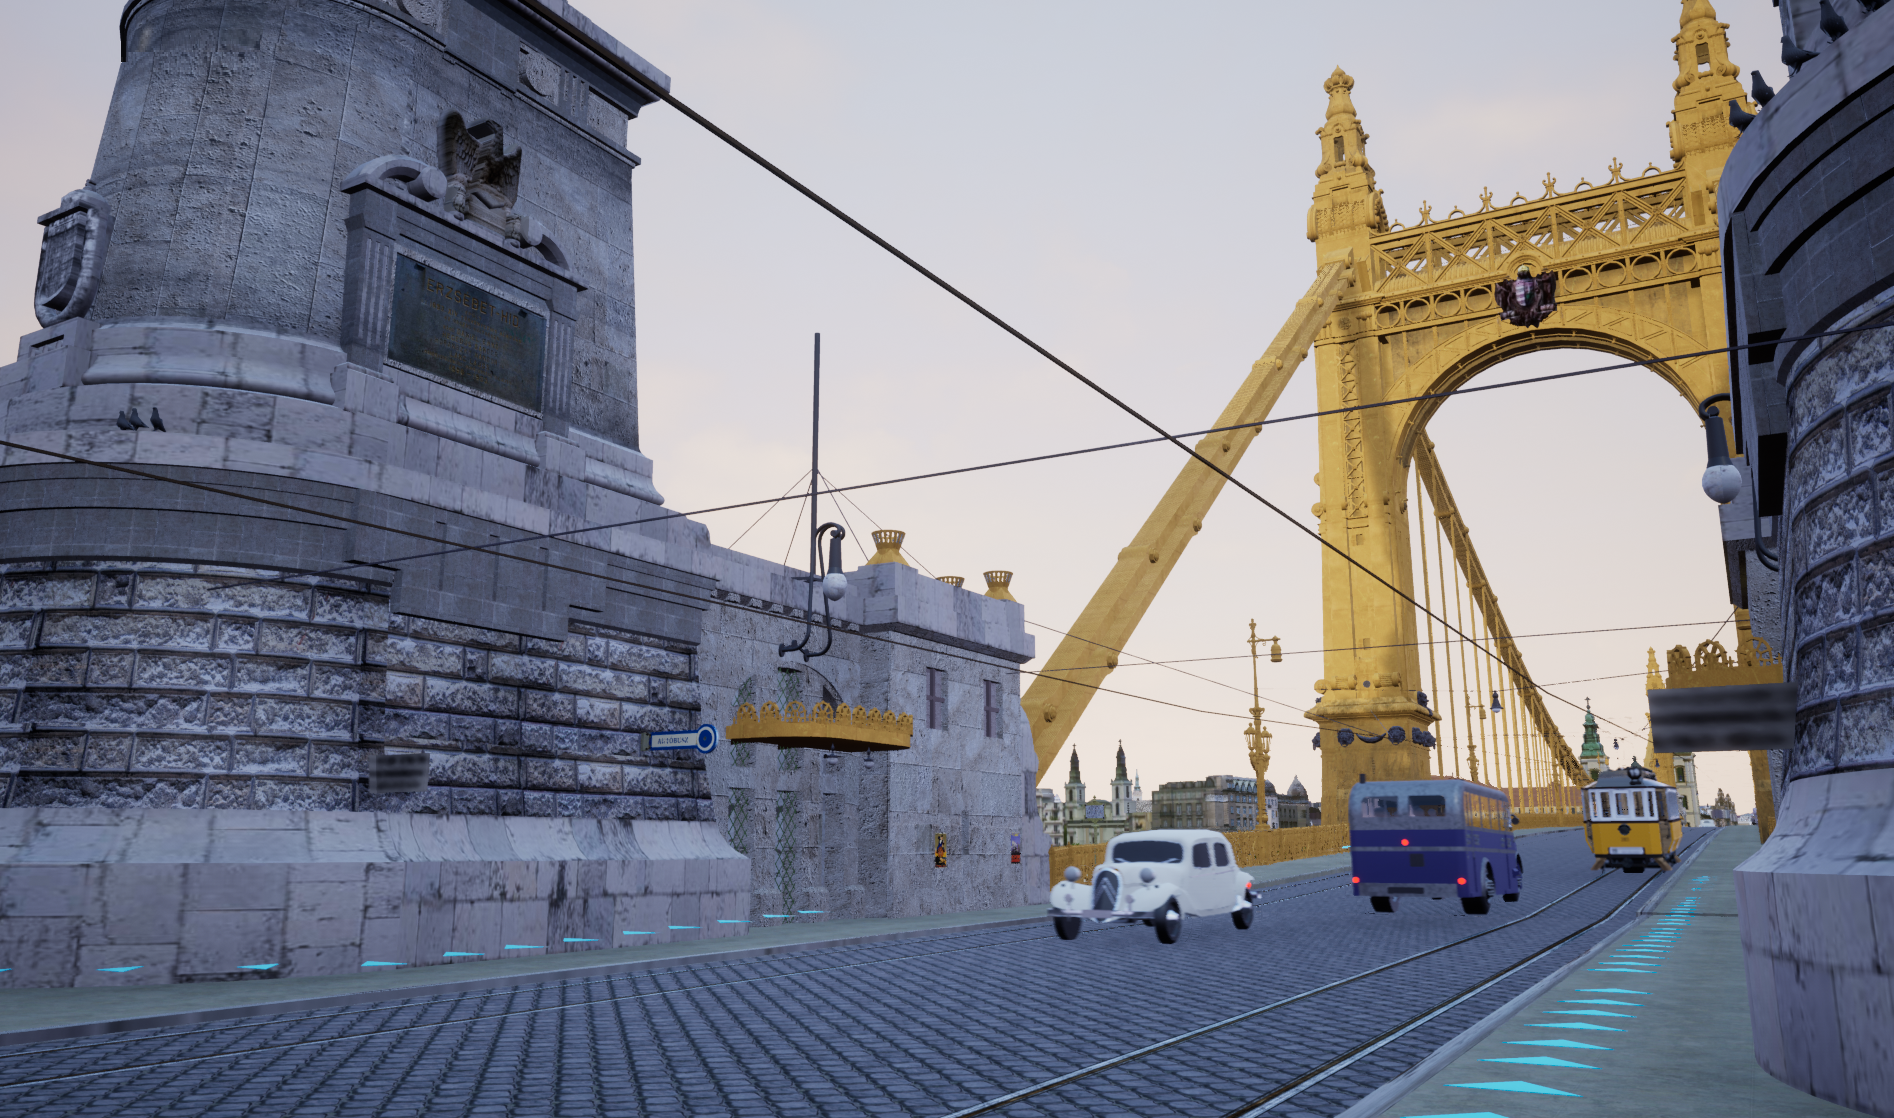 Az eltűnt híd nyomában: kincskeresős számítógépes játékban fedezheted fel az 1940-es évekbeli, régi Erzsébet hidat és környékét